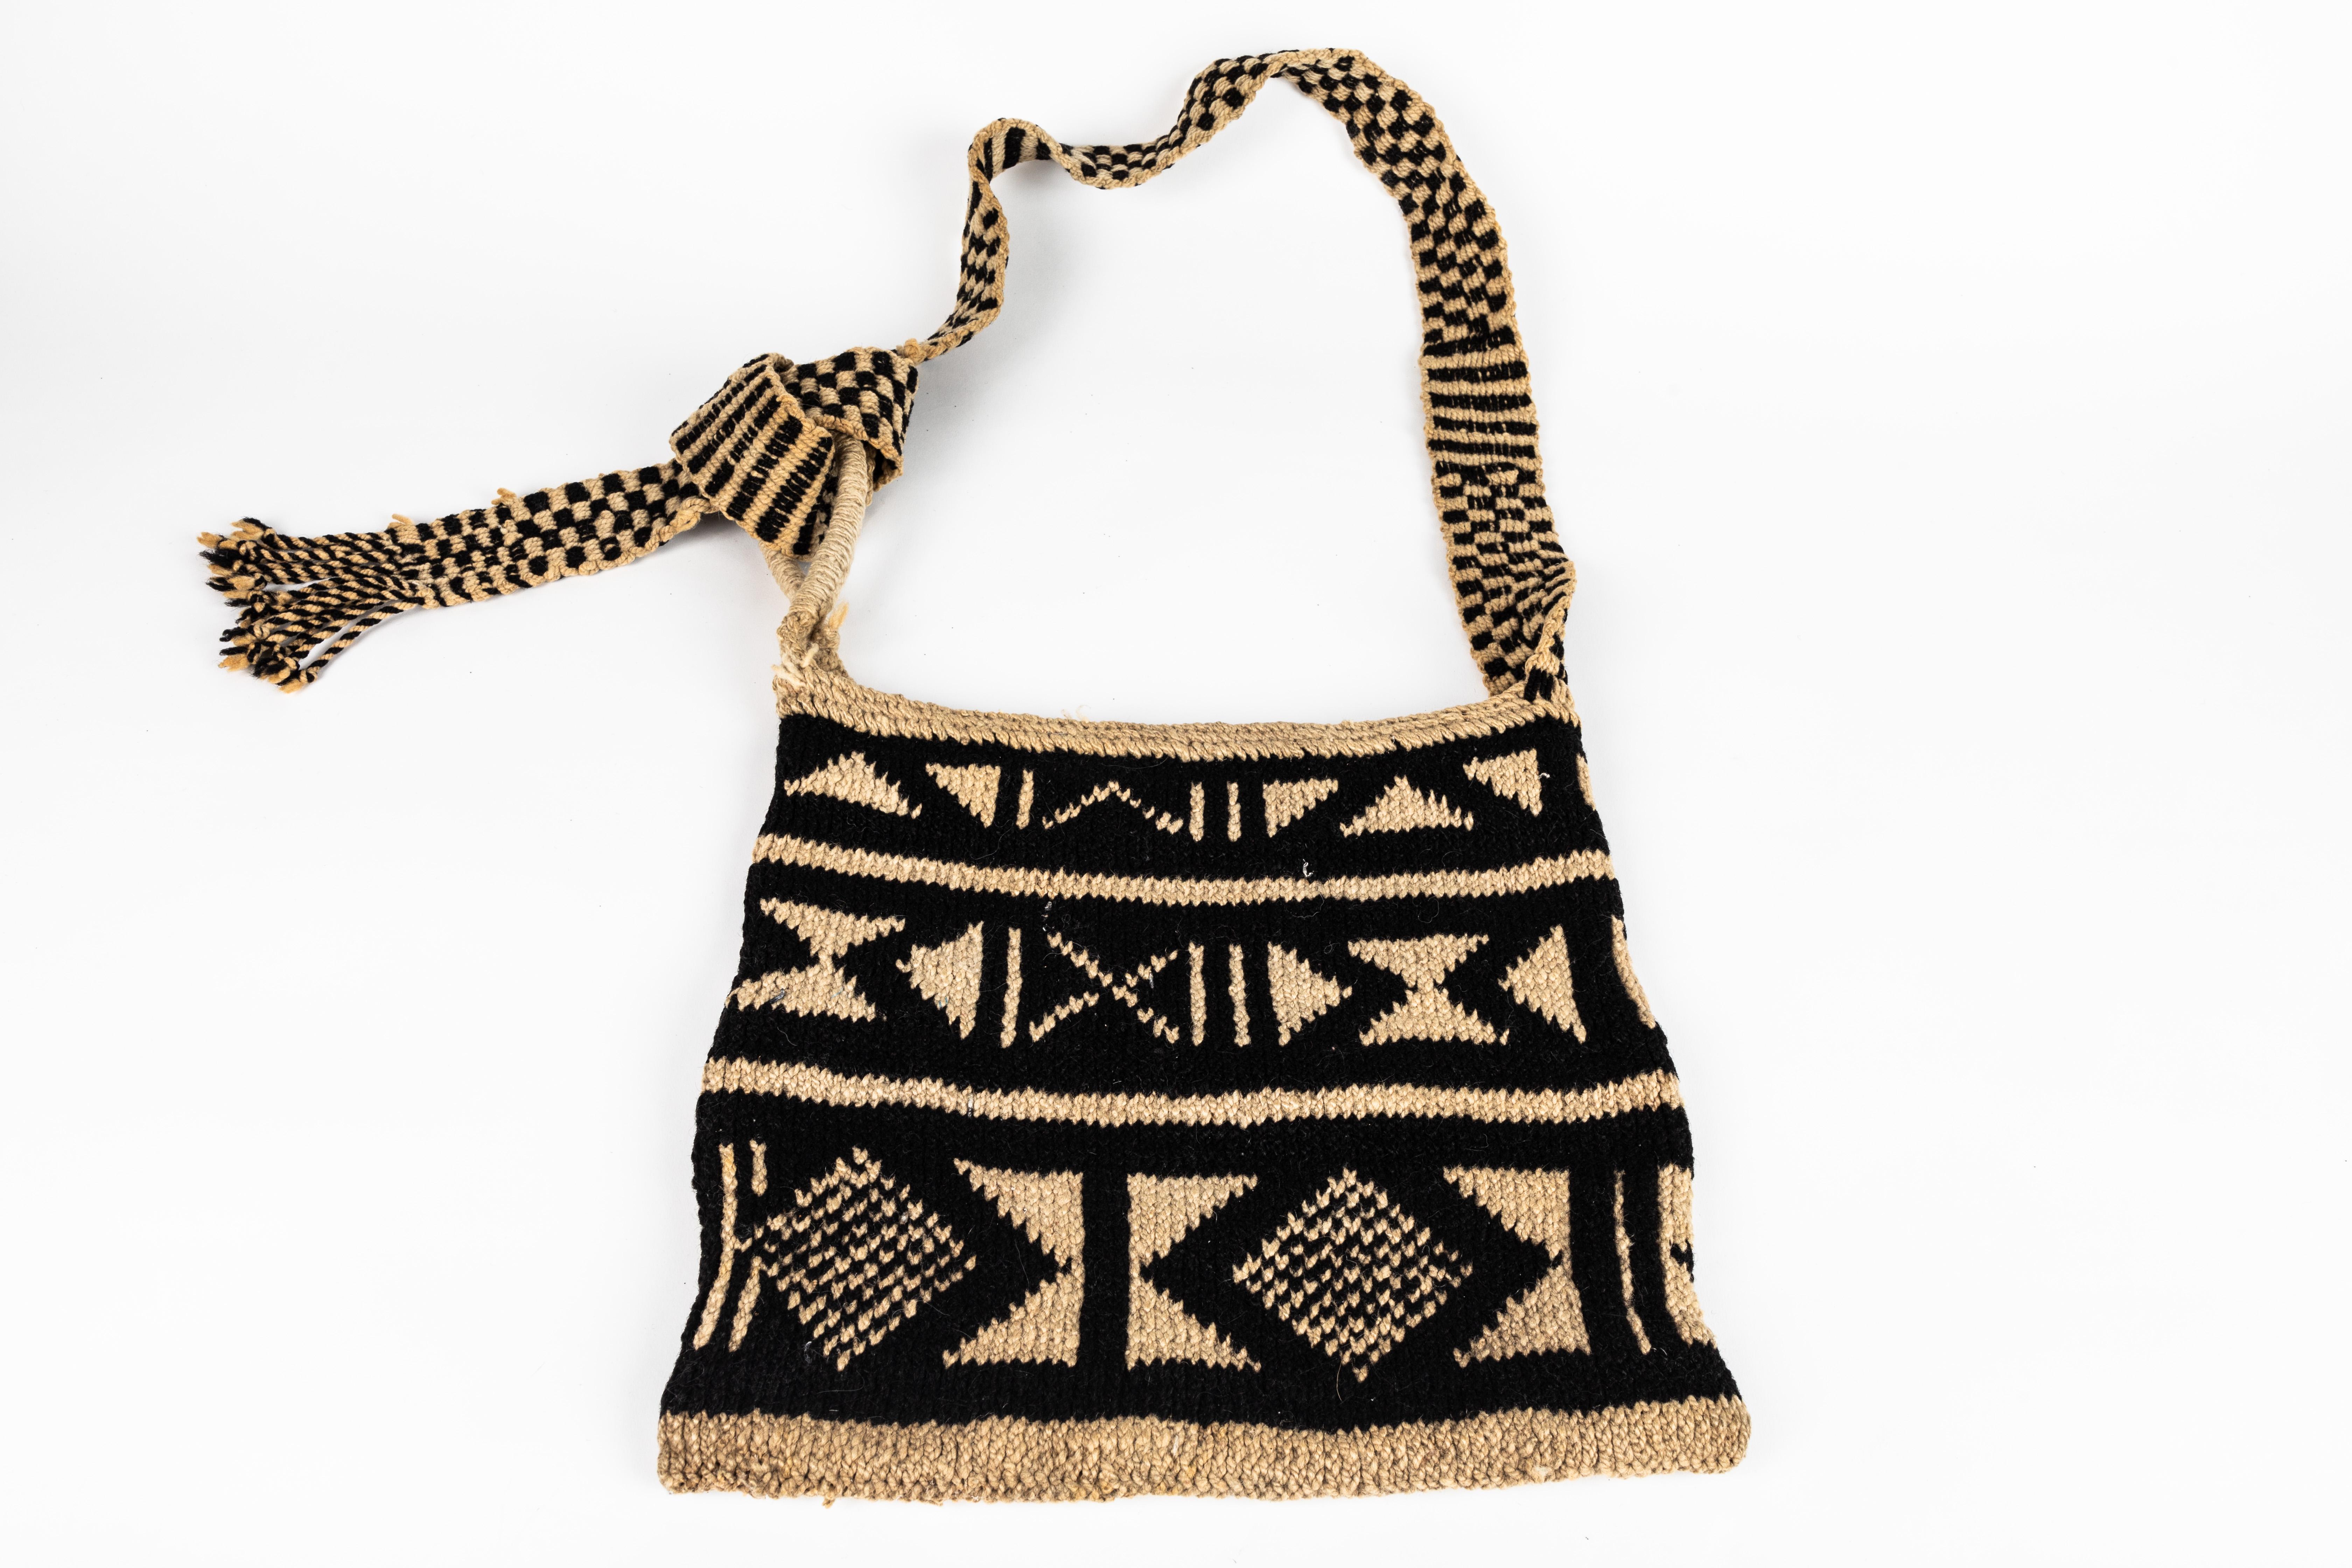 Contemporary Mexican Handwoven Decorative Bag 5